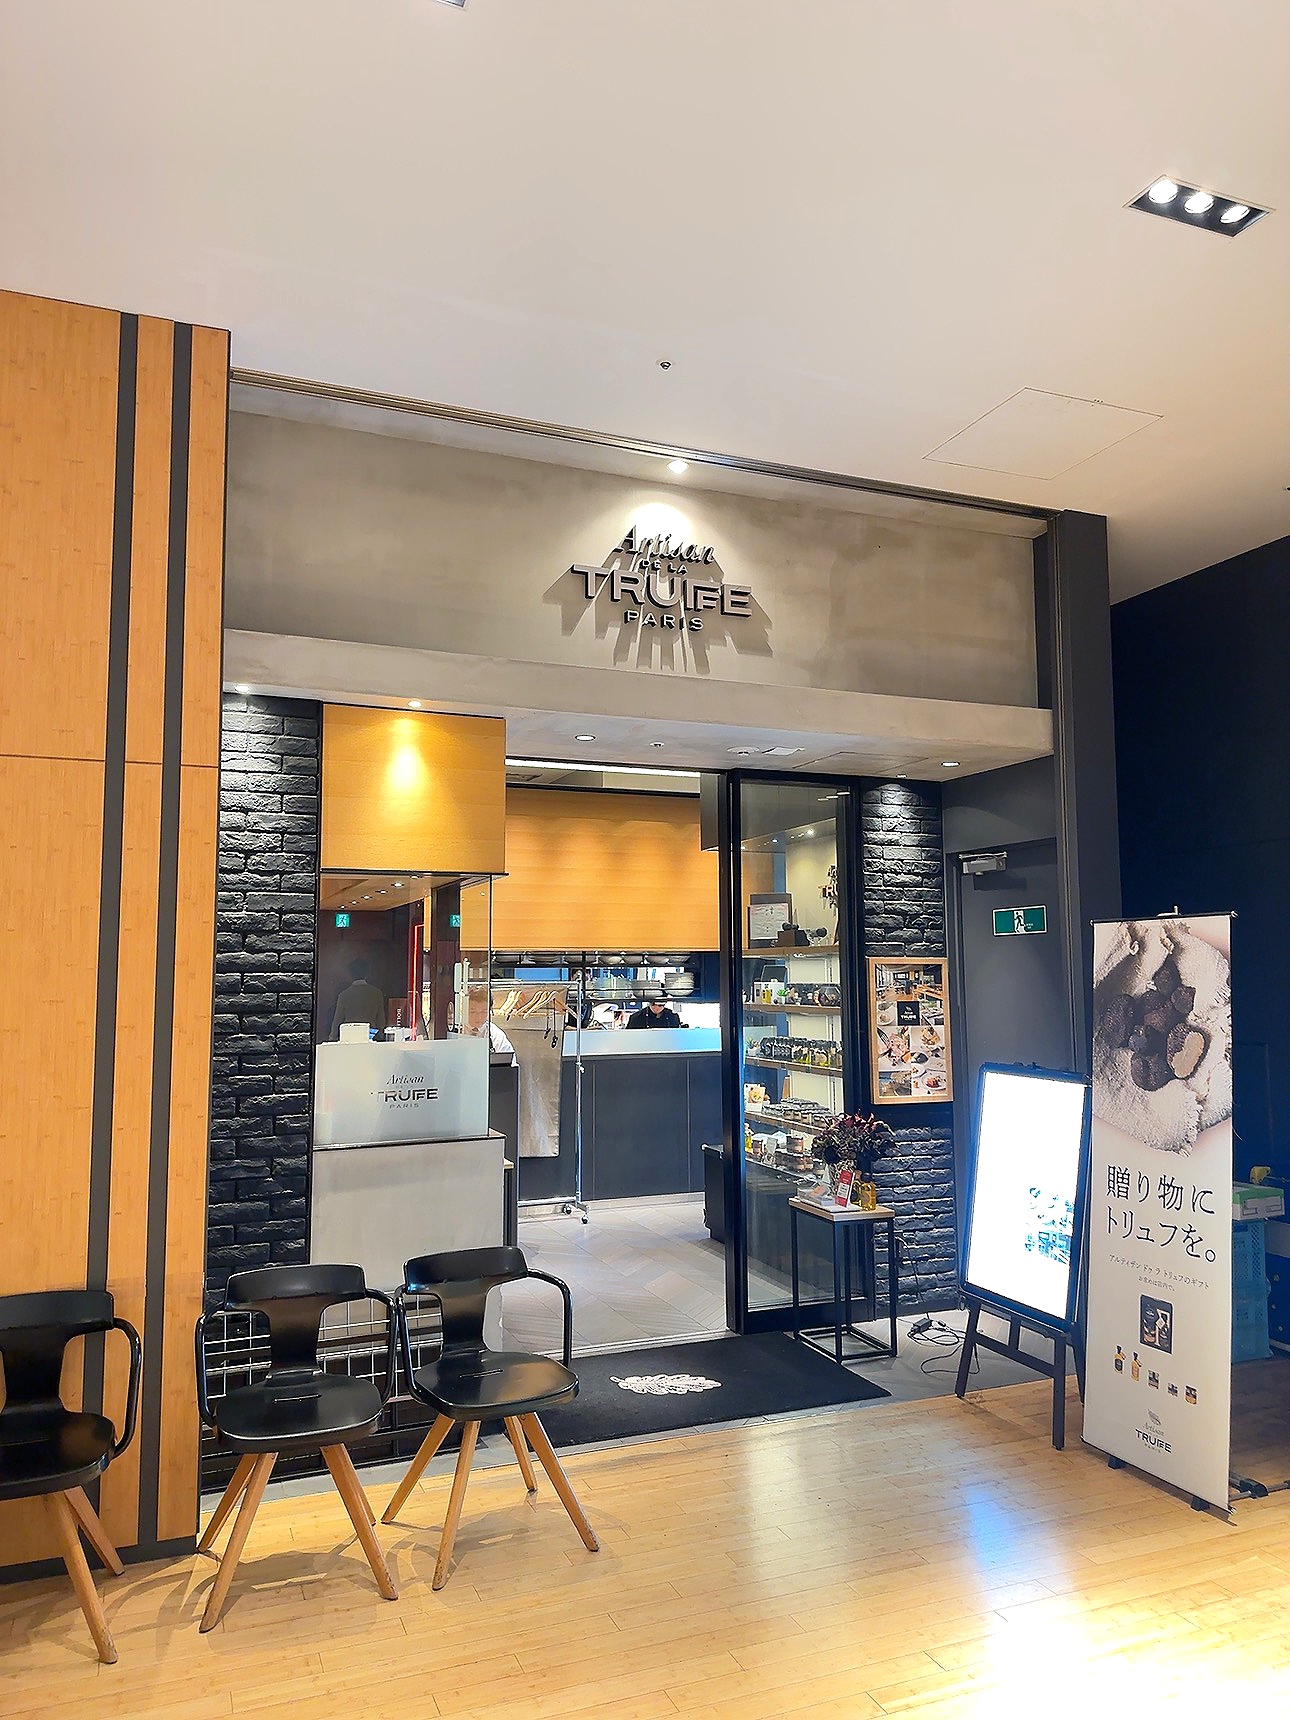 東京ミッドタウンレストラン『Artisan de la TRUFFE Psris』入口